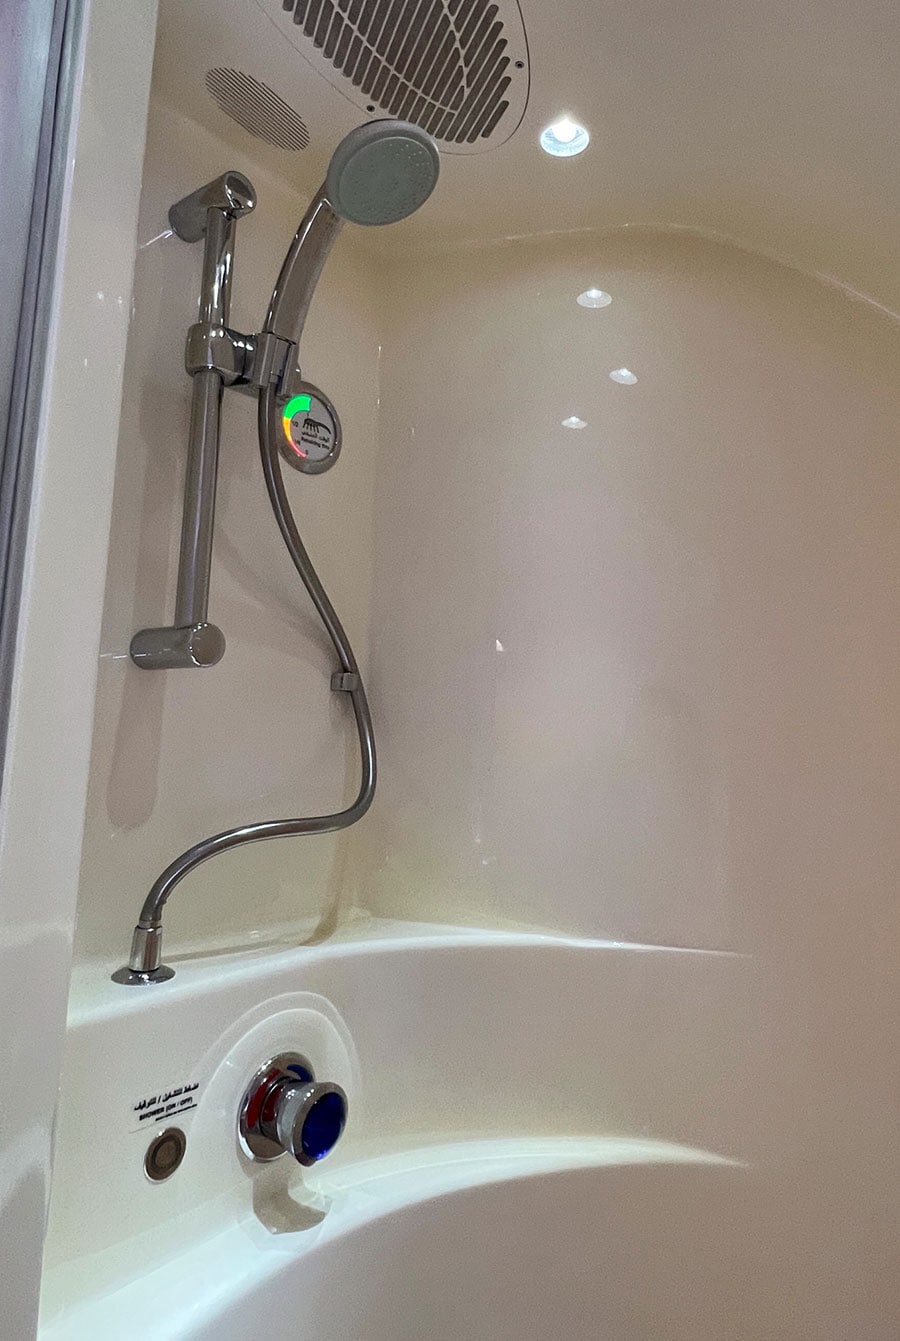 シャワーはボタンを押すだけで出したり止めたりできる。水が少なくなると残量表示が赤くなって分かりやすい。